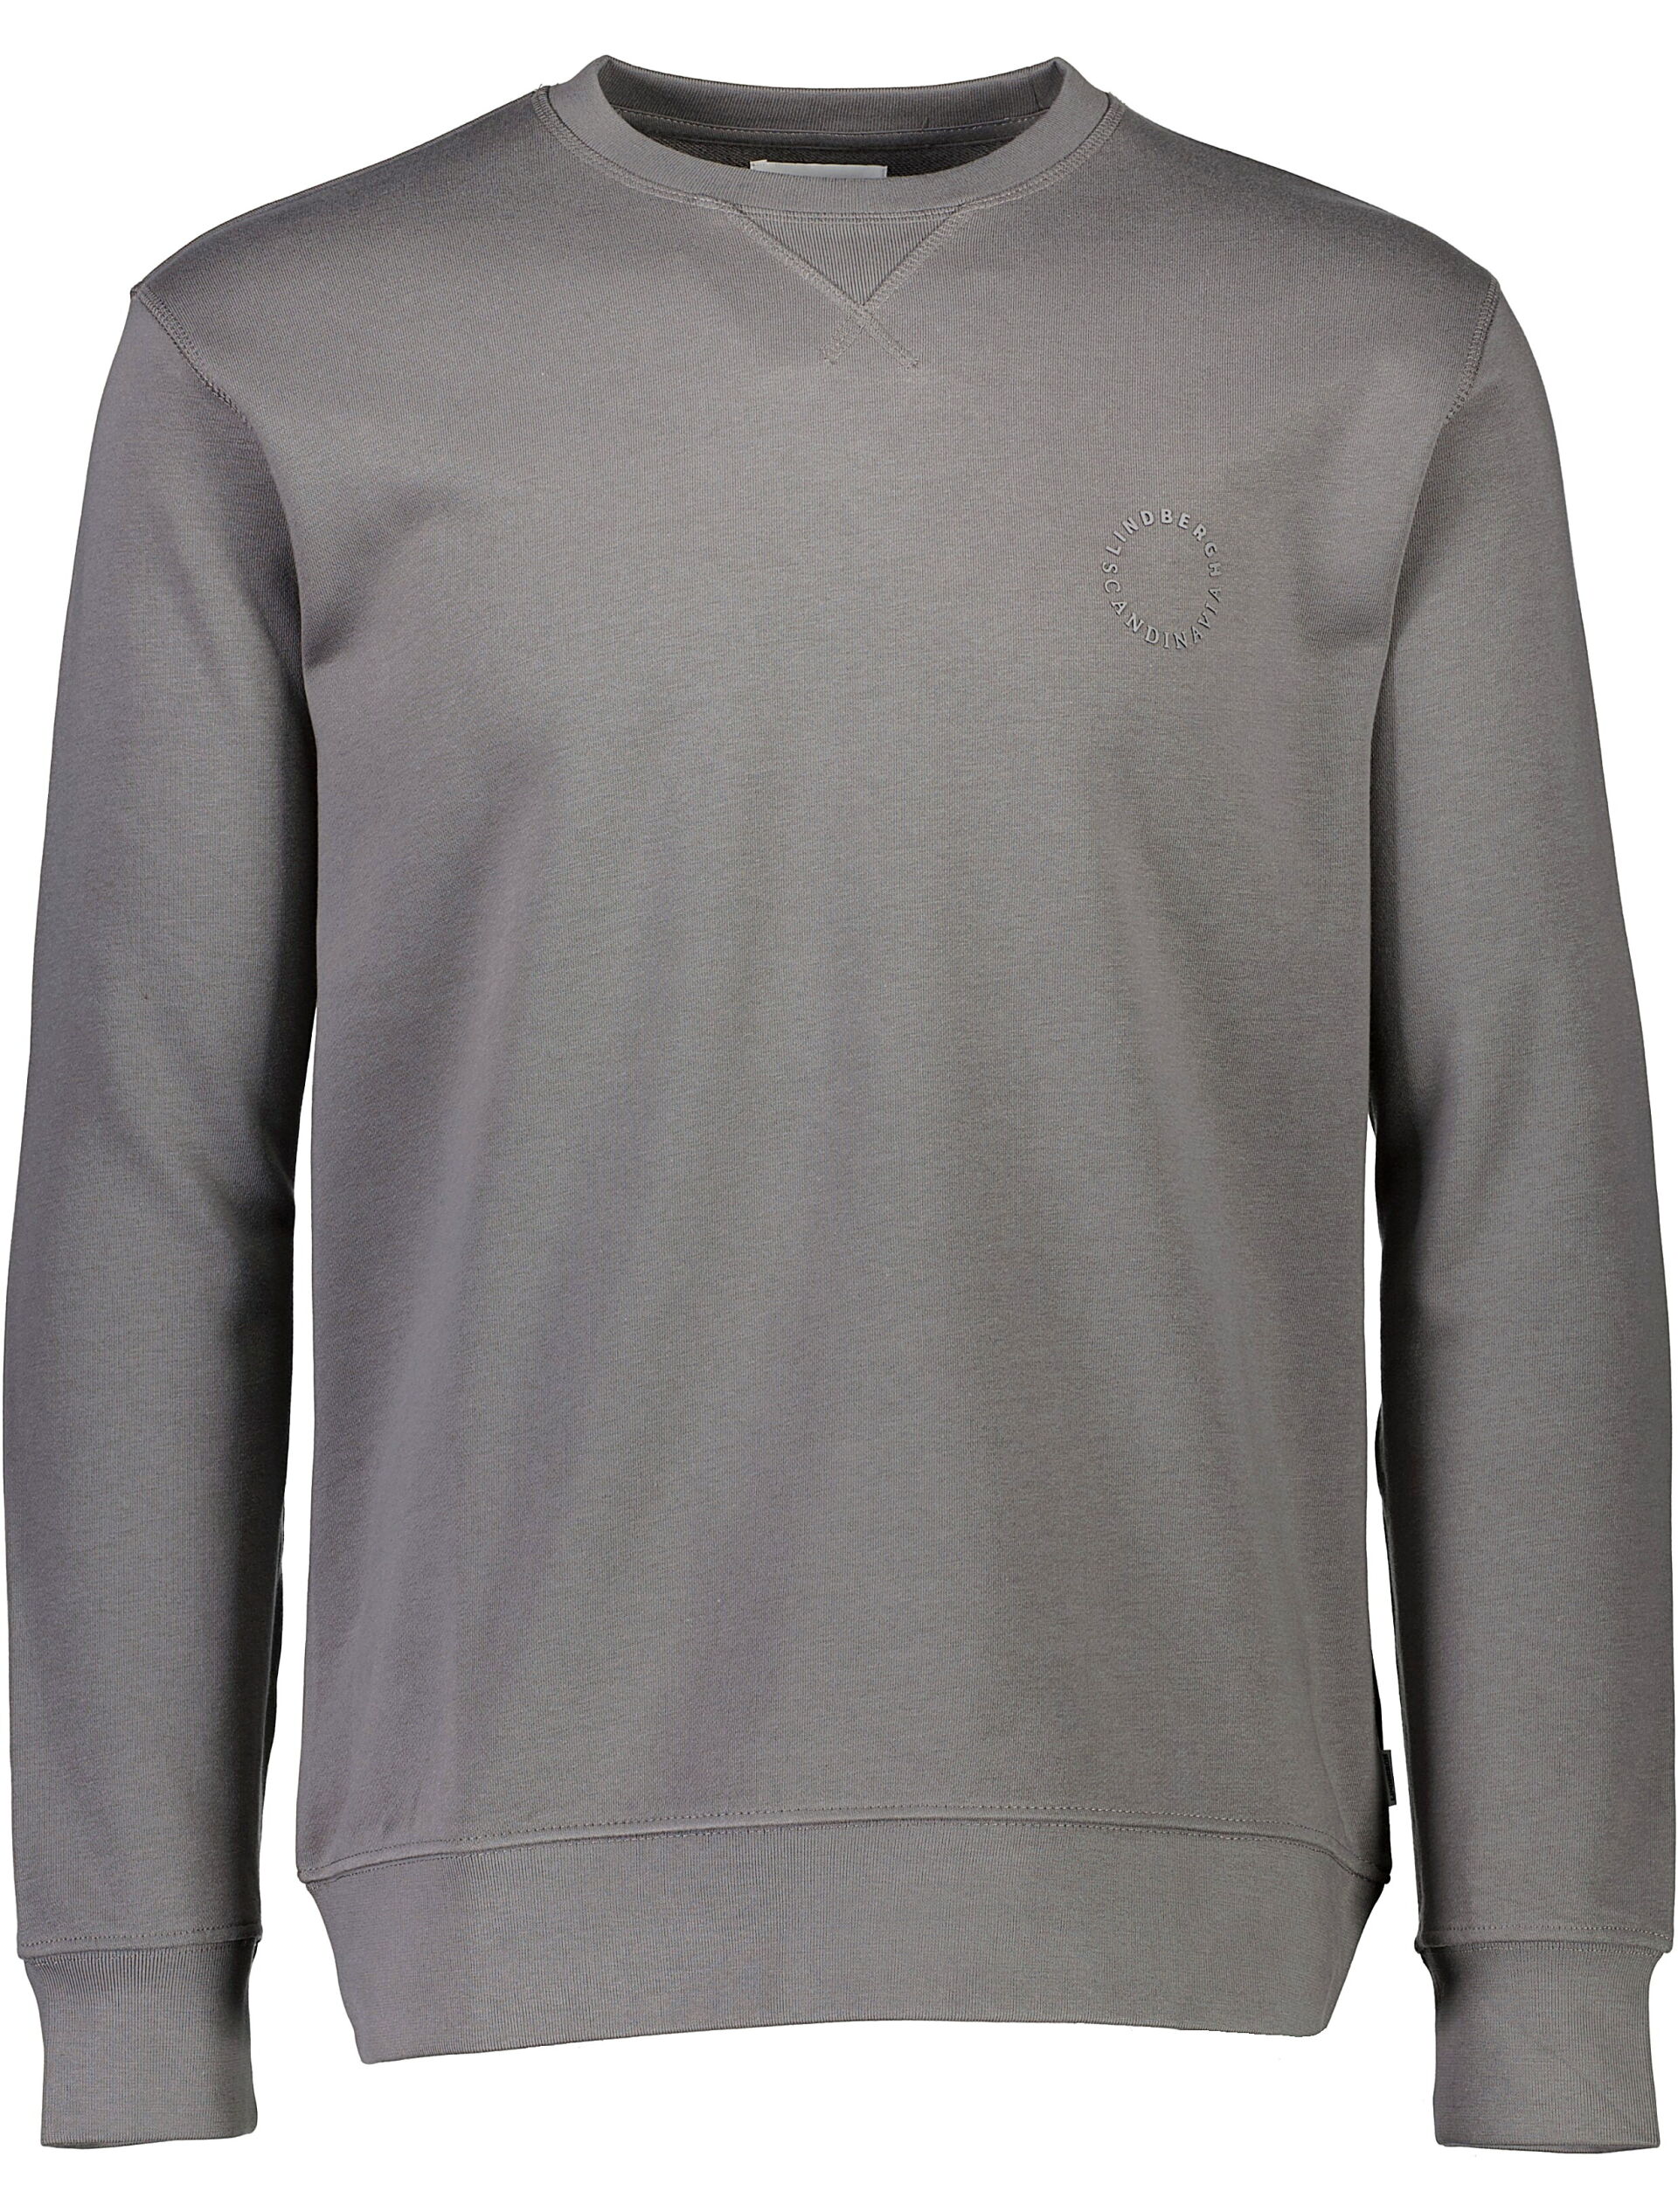 Sweatshirt Sweatshirt Grey 30-705095